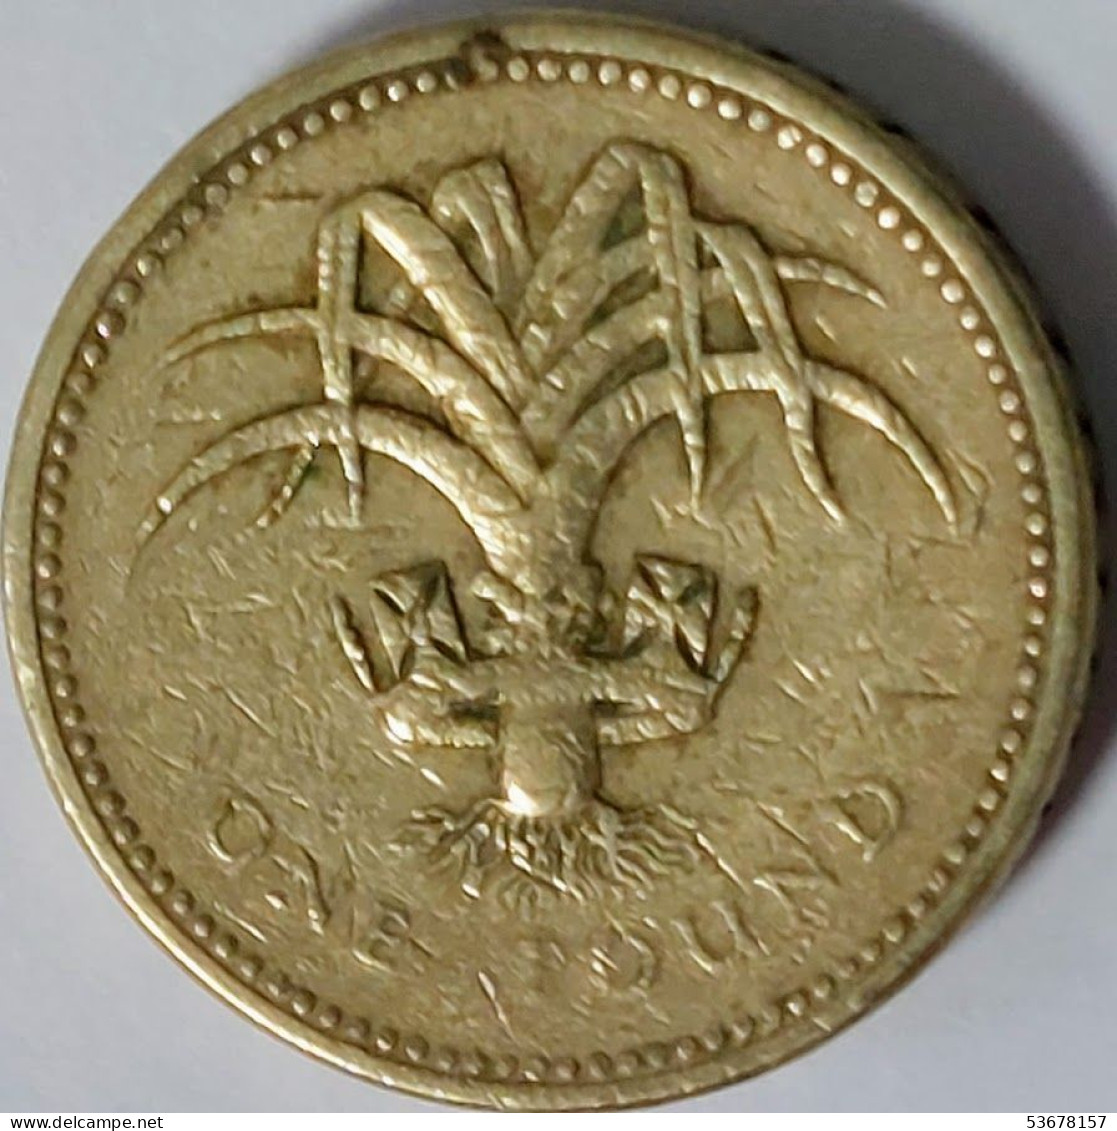 Great Britain - Pound 1985, KM# 941 (#2338) - 1 Pound